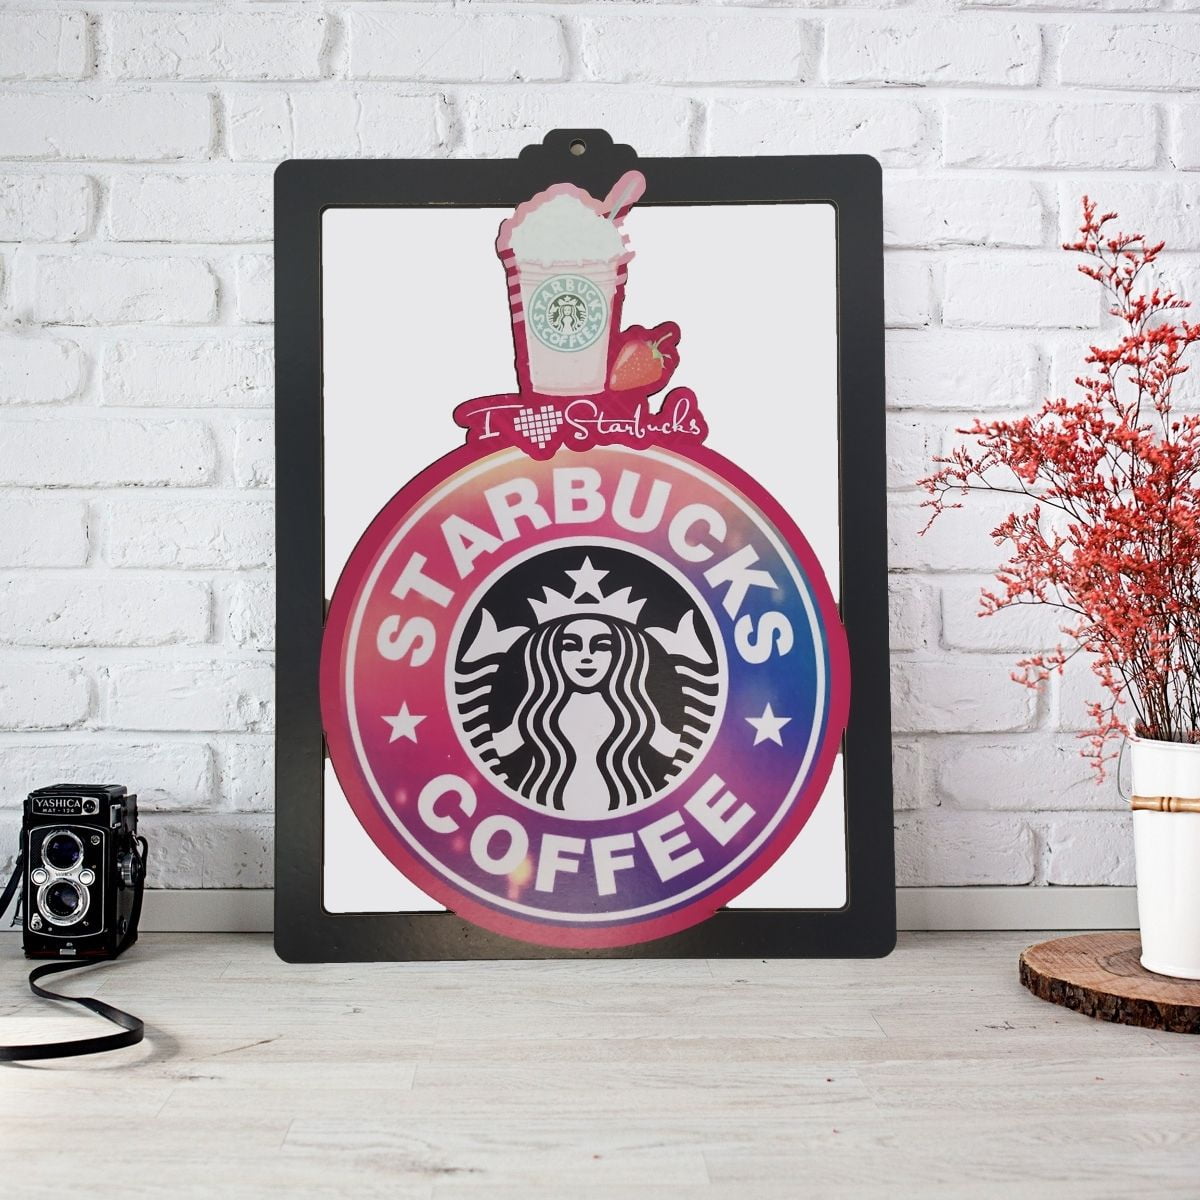 Starbucks tablo 1 - starbucks renkli tablo - figurex